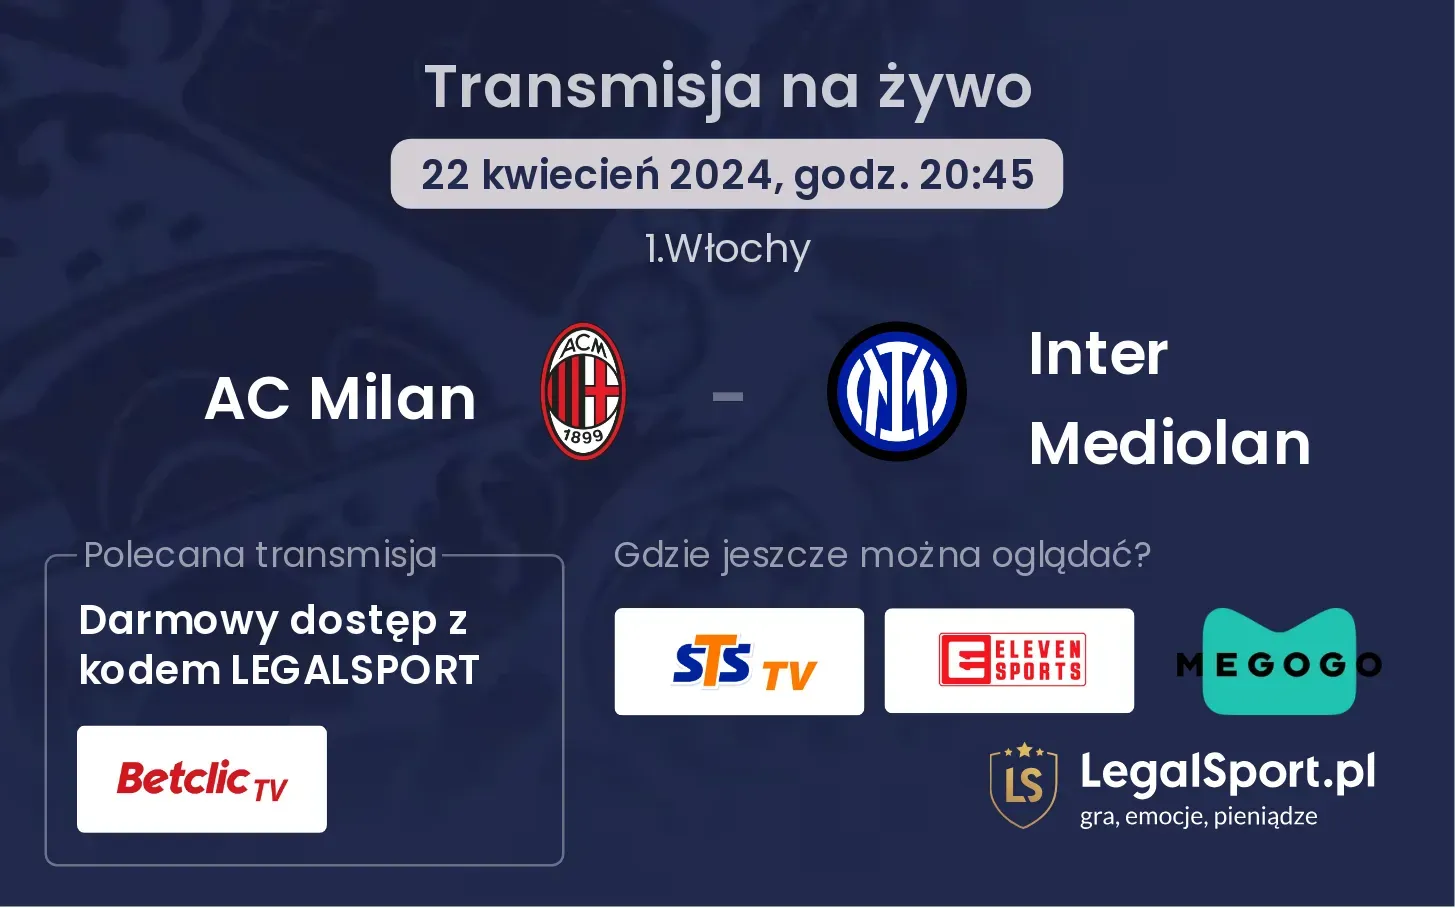 AC Milan - Inter Mediolan transmisja na żywo